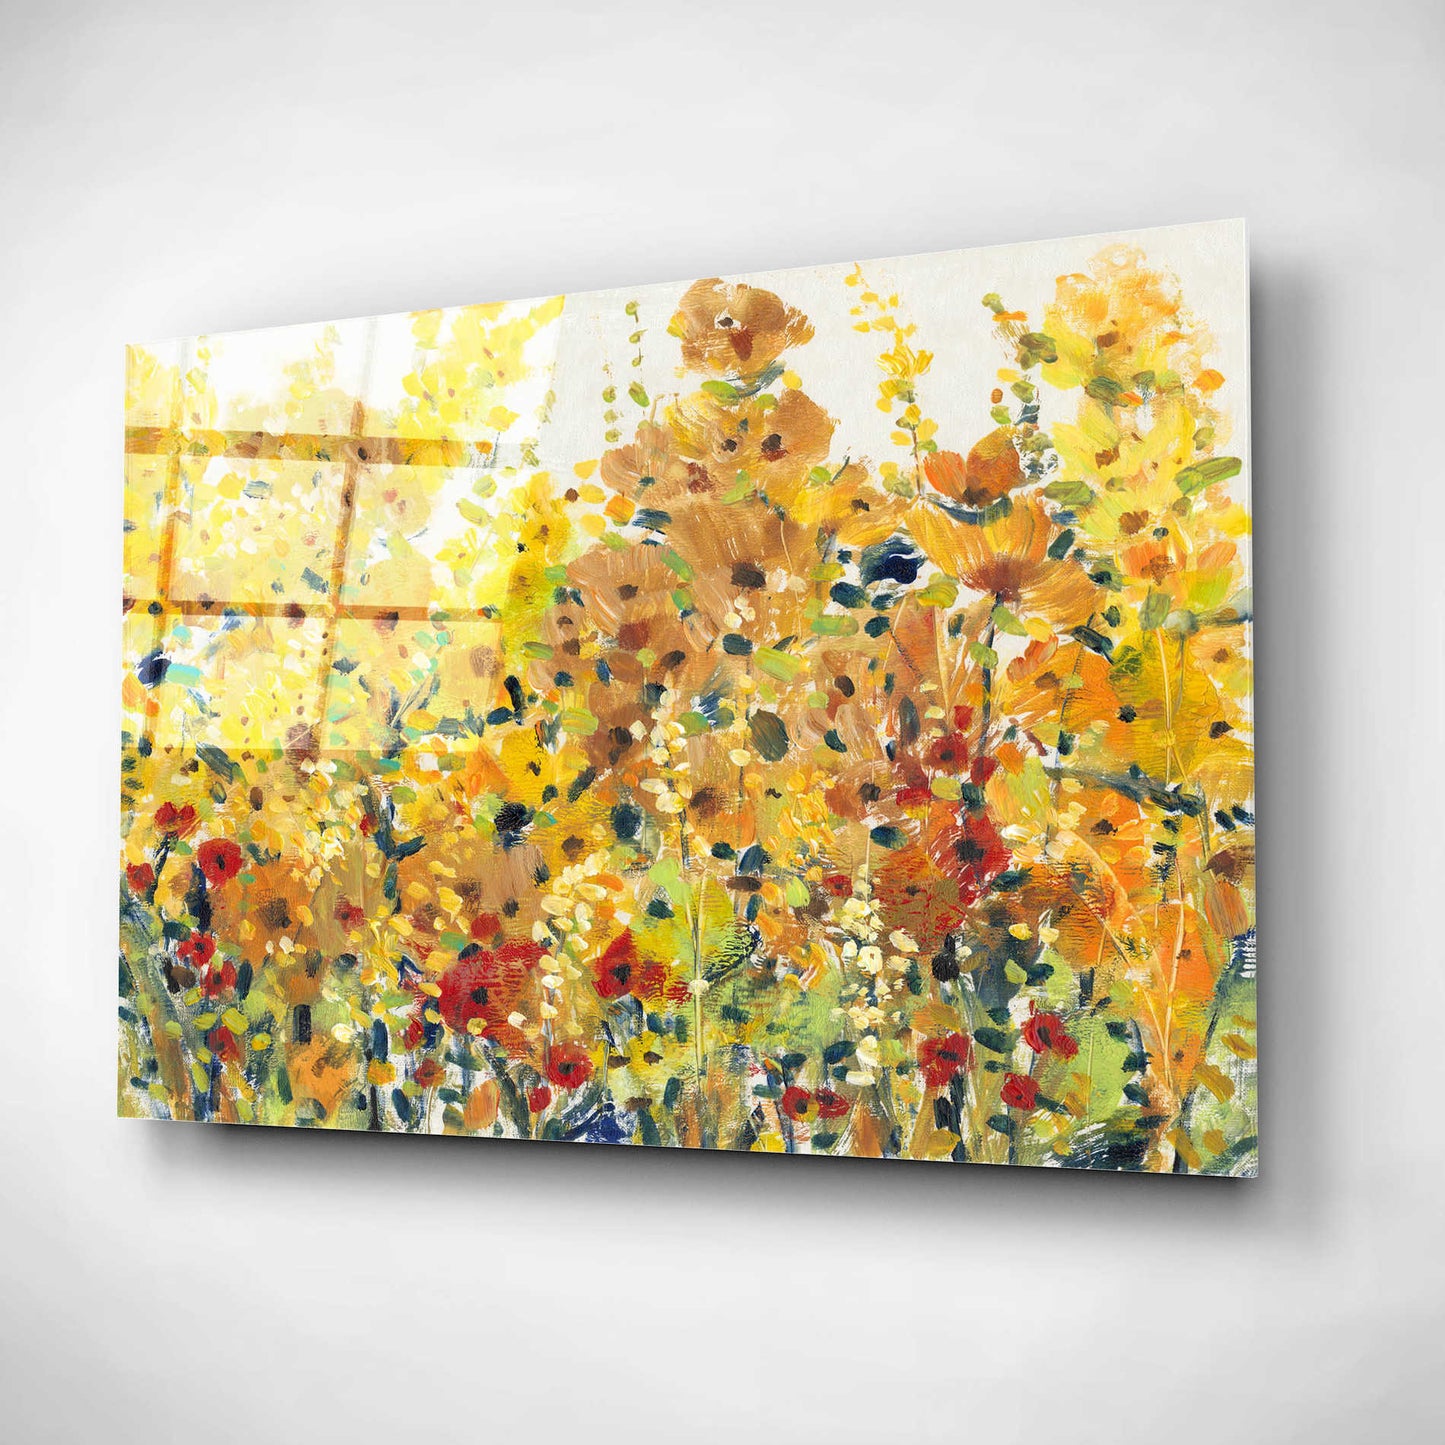 Epic Art 'Golden Summer Garden I' by Tim O'Toole, Acrylic Glass Wall Art,24x16